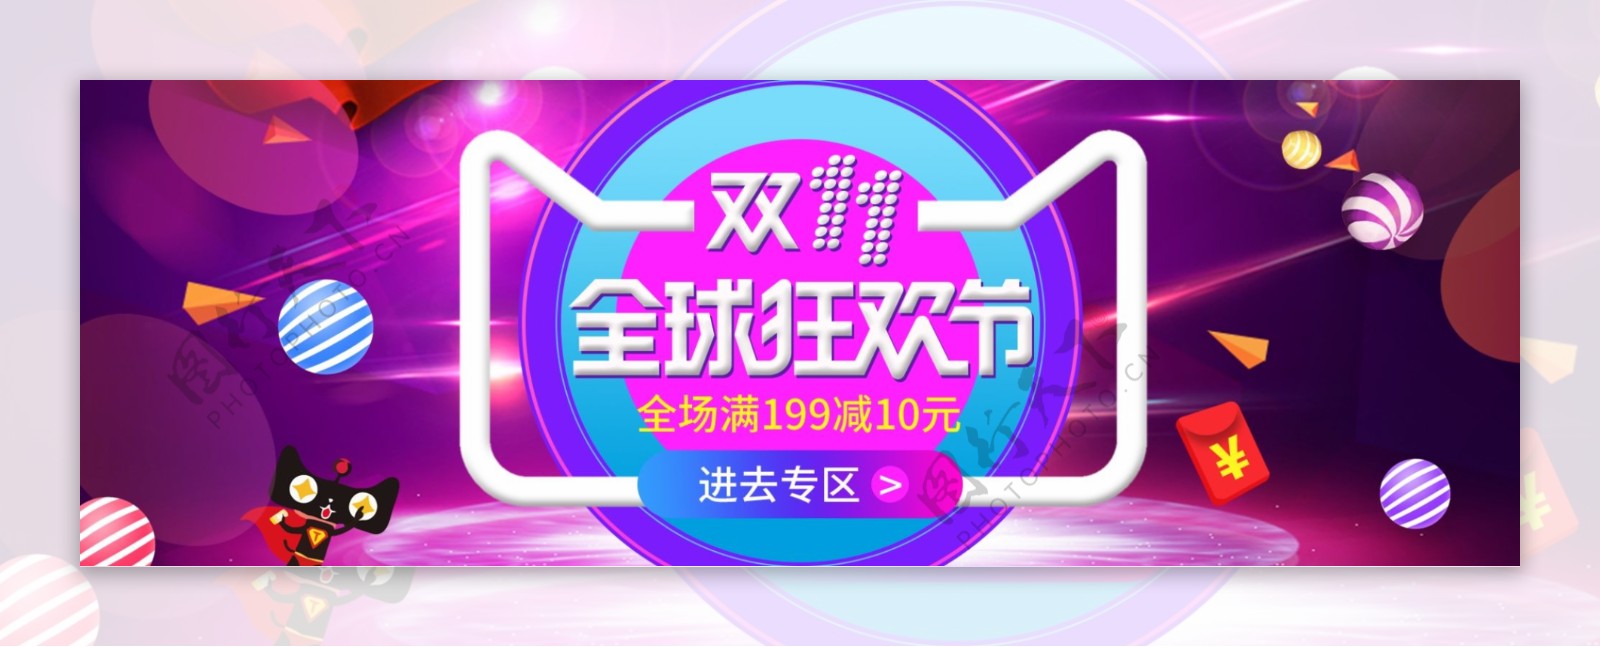 紫色时尚双11促销宣传电商海报淘宝双十一banner